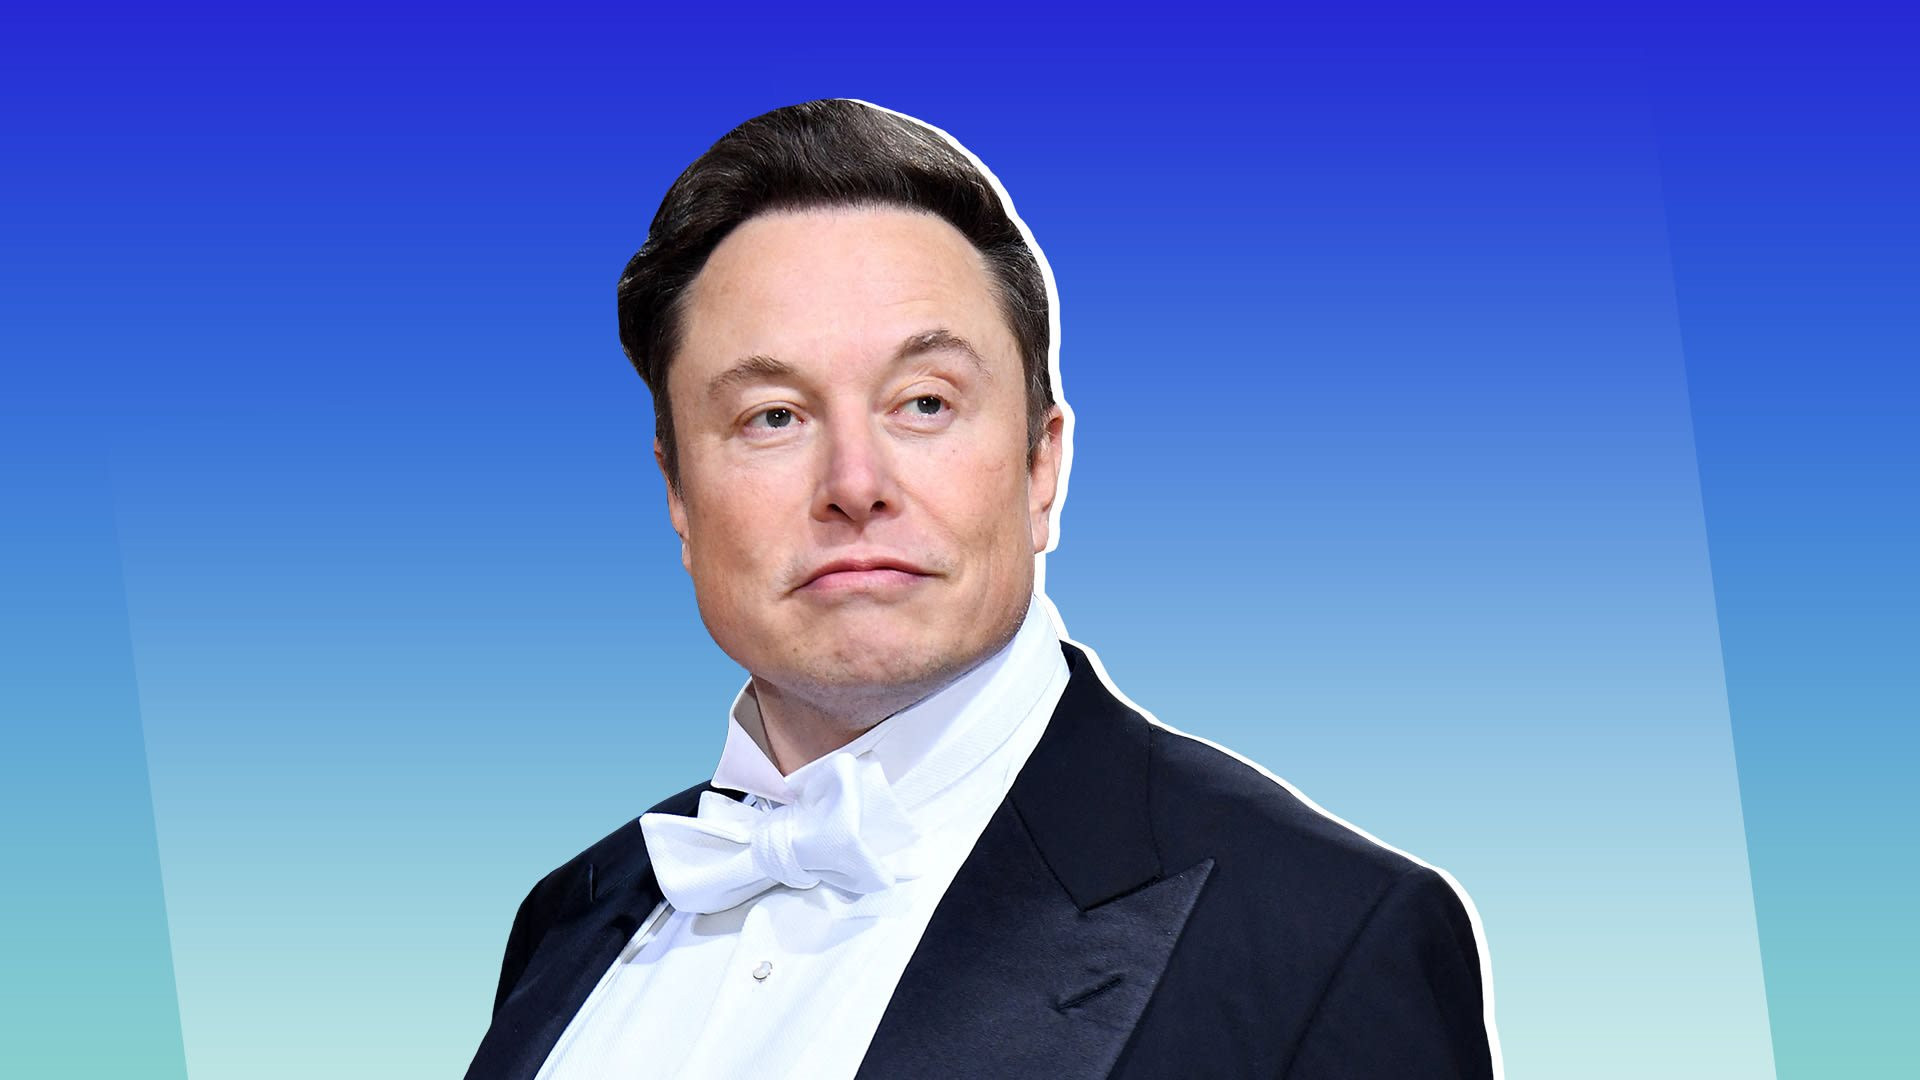 Elon Musk từ chối dự Diễn đàn Kinh tế Thế giới vì ‘nhàm chán’, ban tổ chức lên tiếng: ‘Ông ấy không được mời từ năm 2015’ - Ảnh 1.